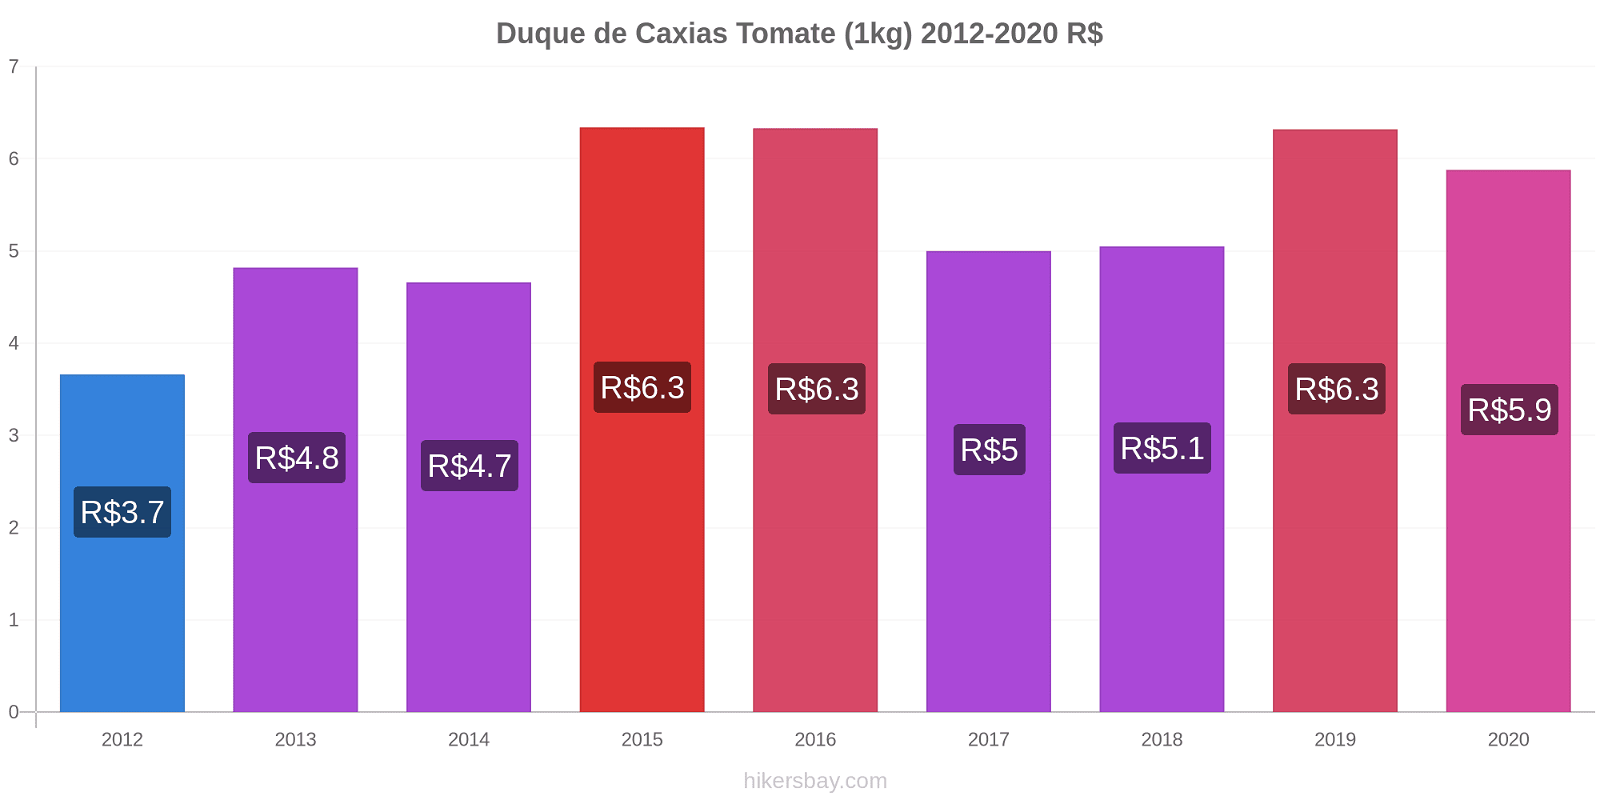 Duque de Caxias variação de preço Tomate (1kg) hikersbay.com